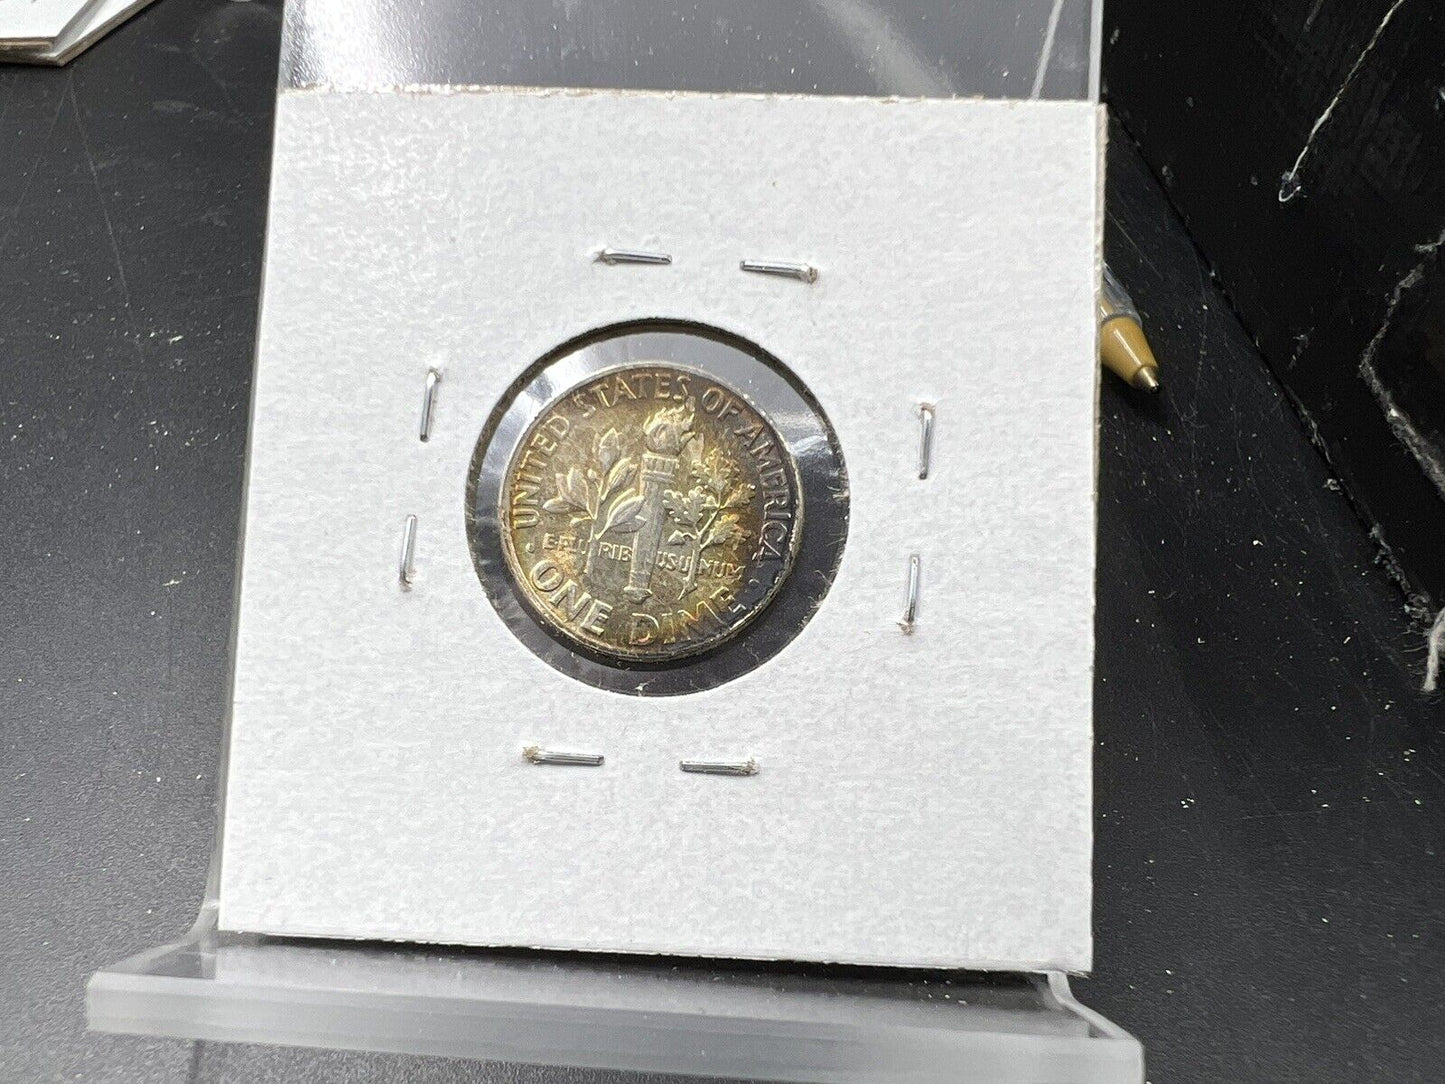 1953 P Roosevelt Silver Dime Coin BU UN Neat Toning Toner